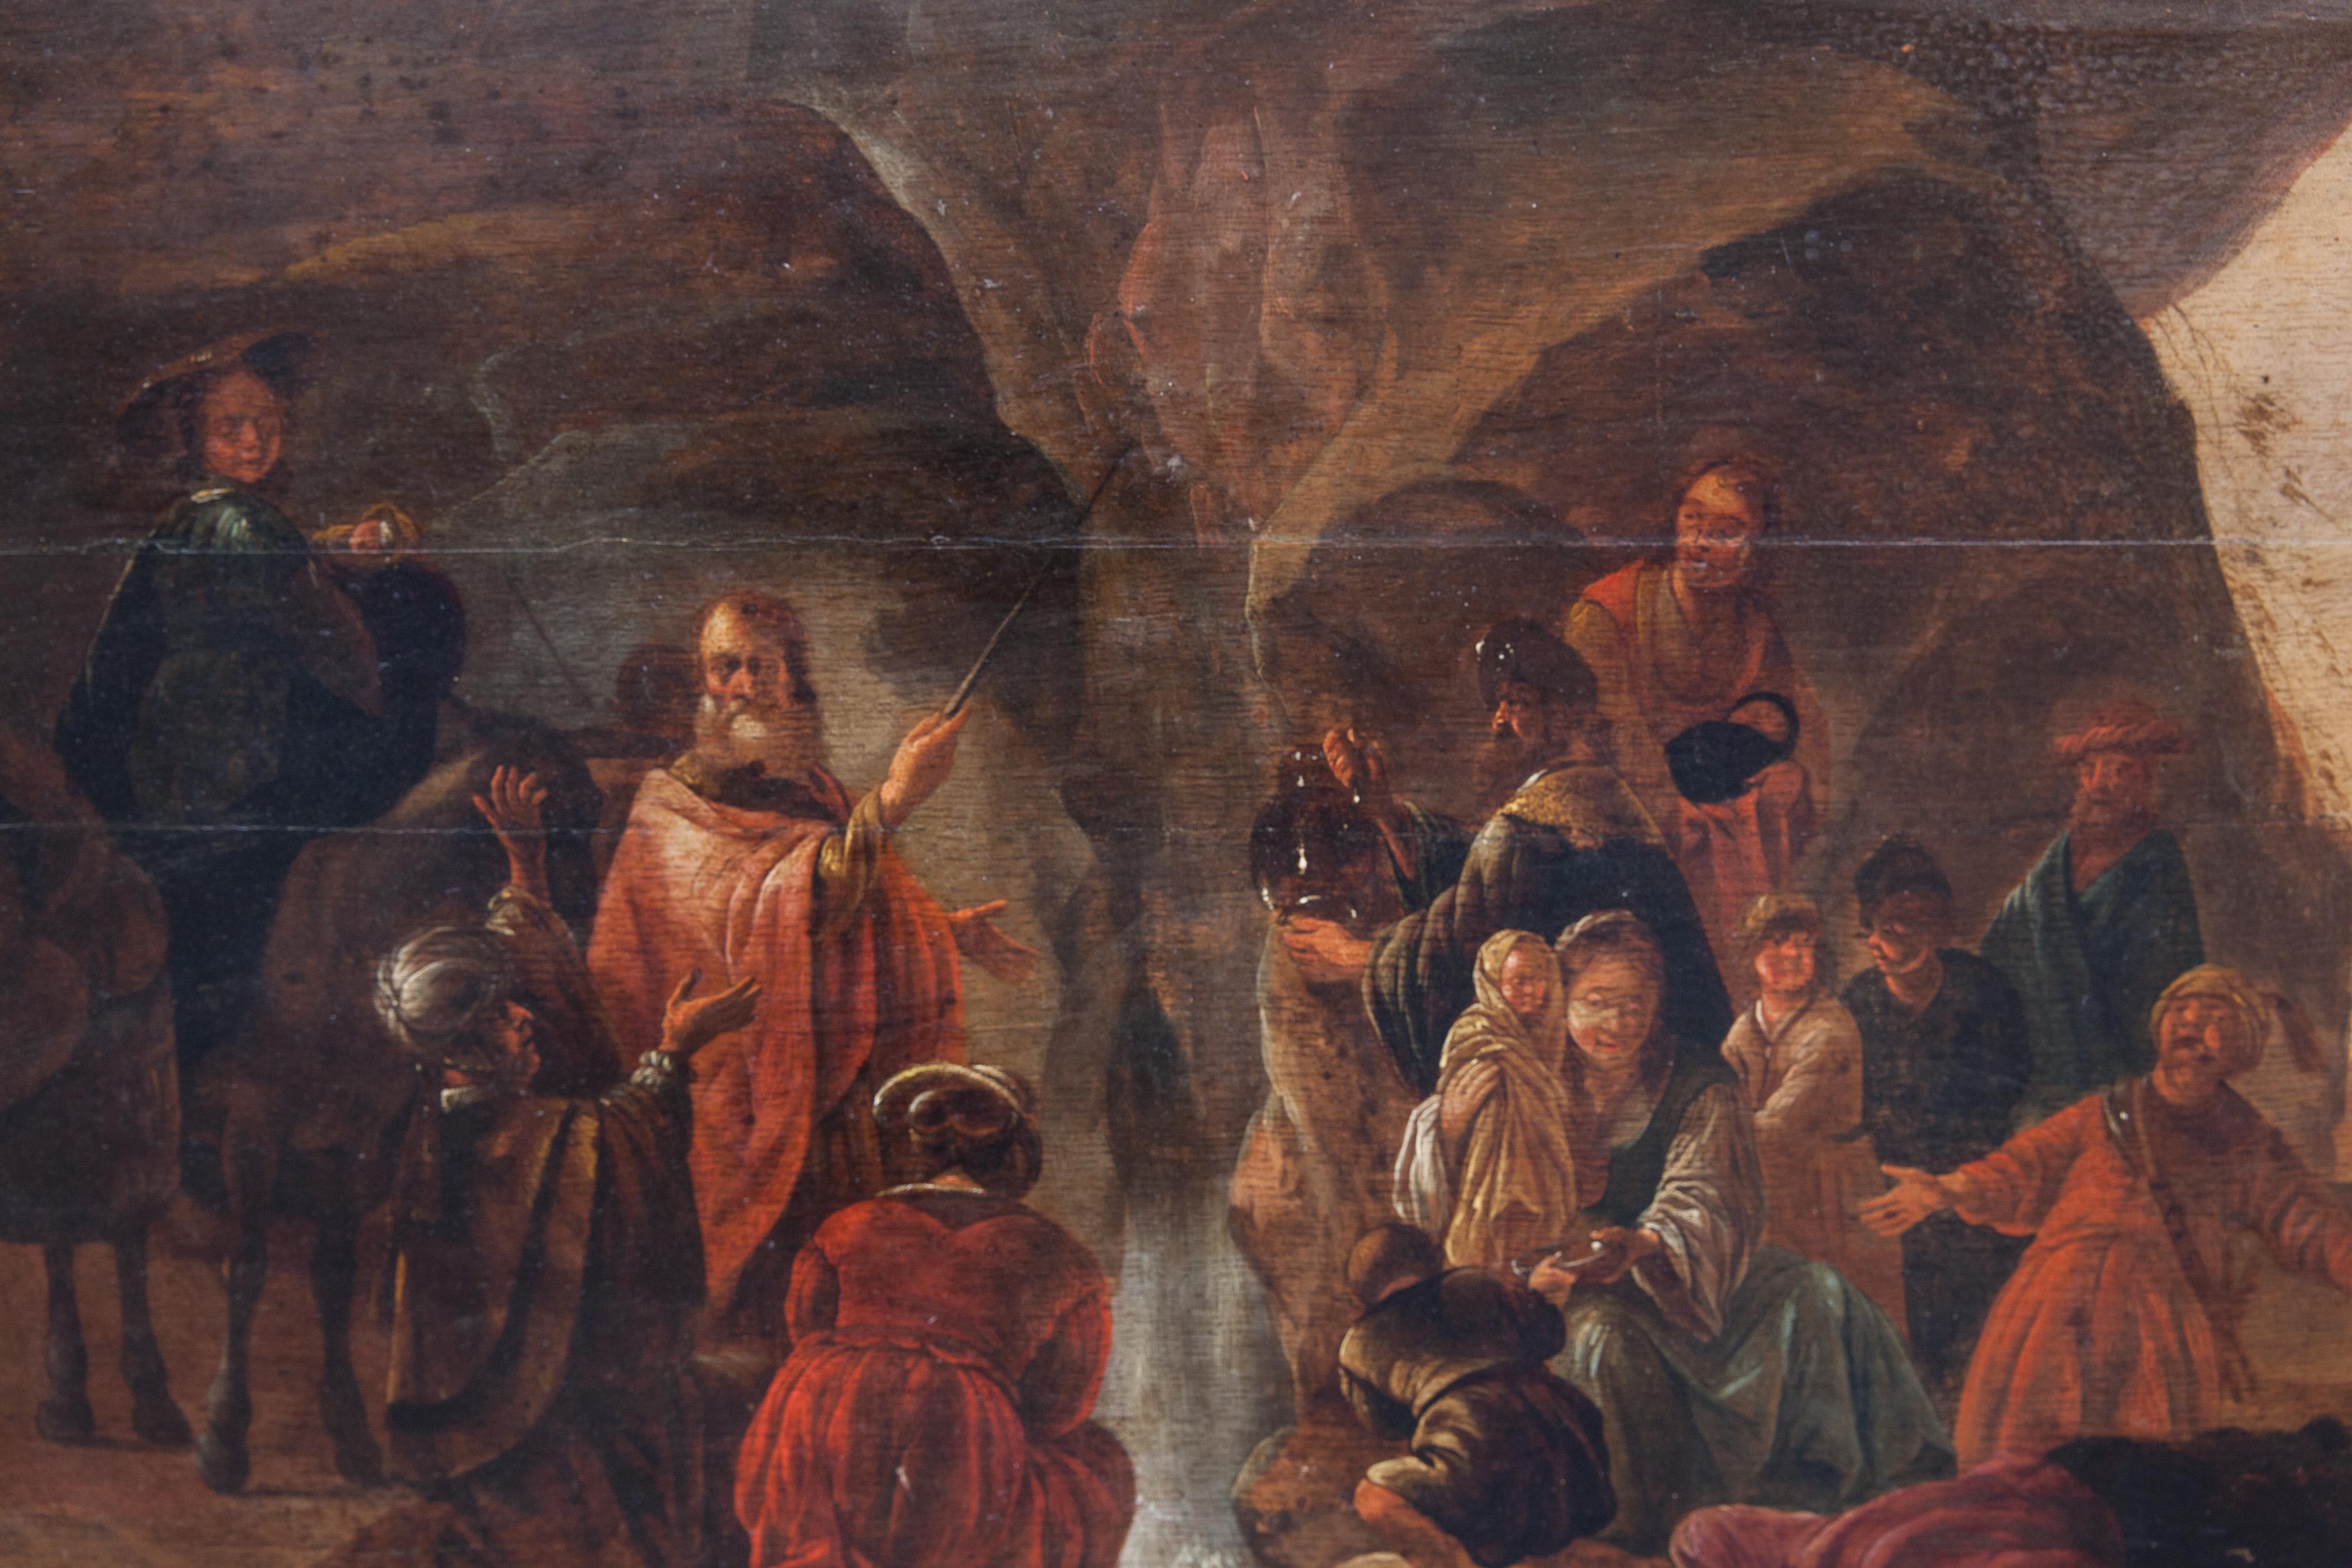 
Moses schlägt Wasser aus dem Felsen Holländische Schule, XVII Jahrhundert. Werkstatt von Jacob de Wet (Haarlem, 1610-1675).
Technik: Öl auf Eichenholzplatte, bestehend aus 3 horizontalen Tafeln.
In diesem stimmungsvollen Werk steht Moses in einer